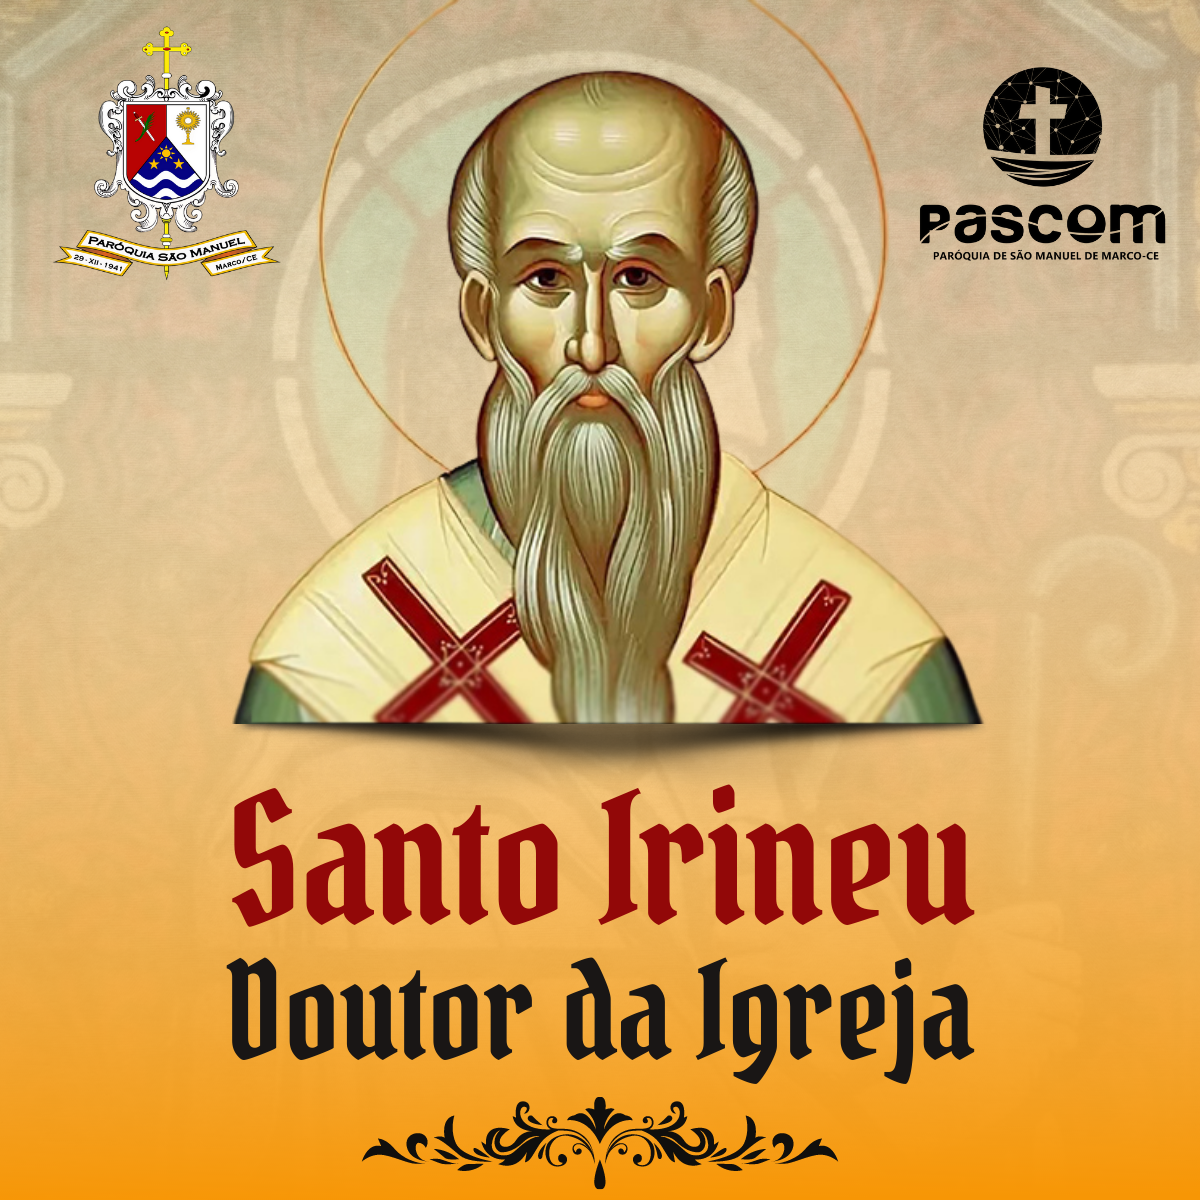 Santo Irineu, Doutor da Igreja. Créditos: Paróquia de São Manuel